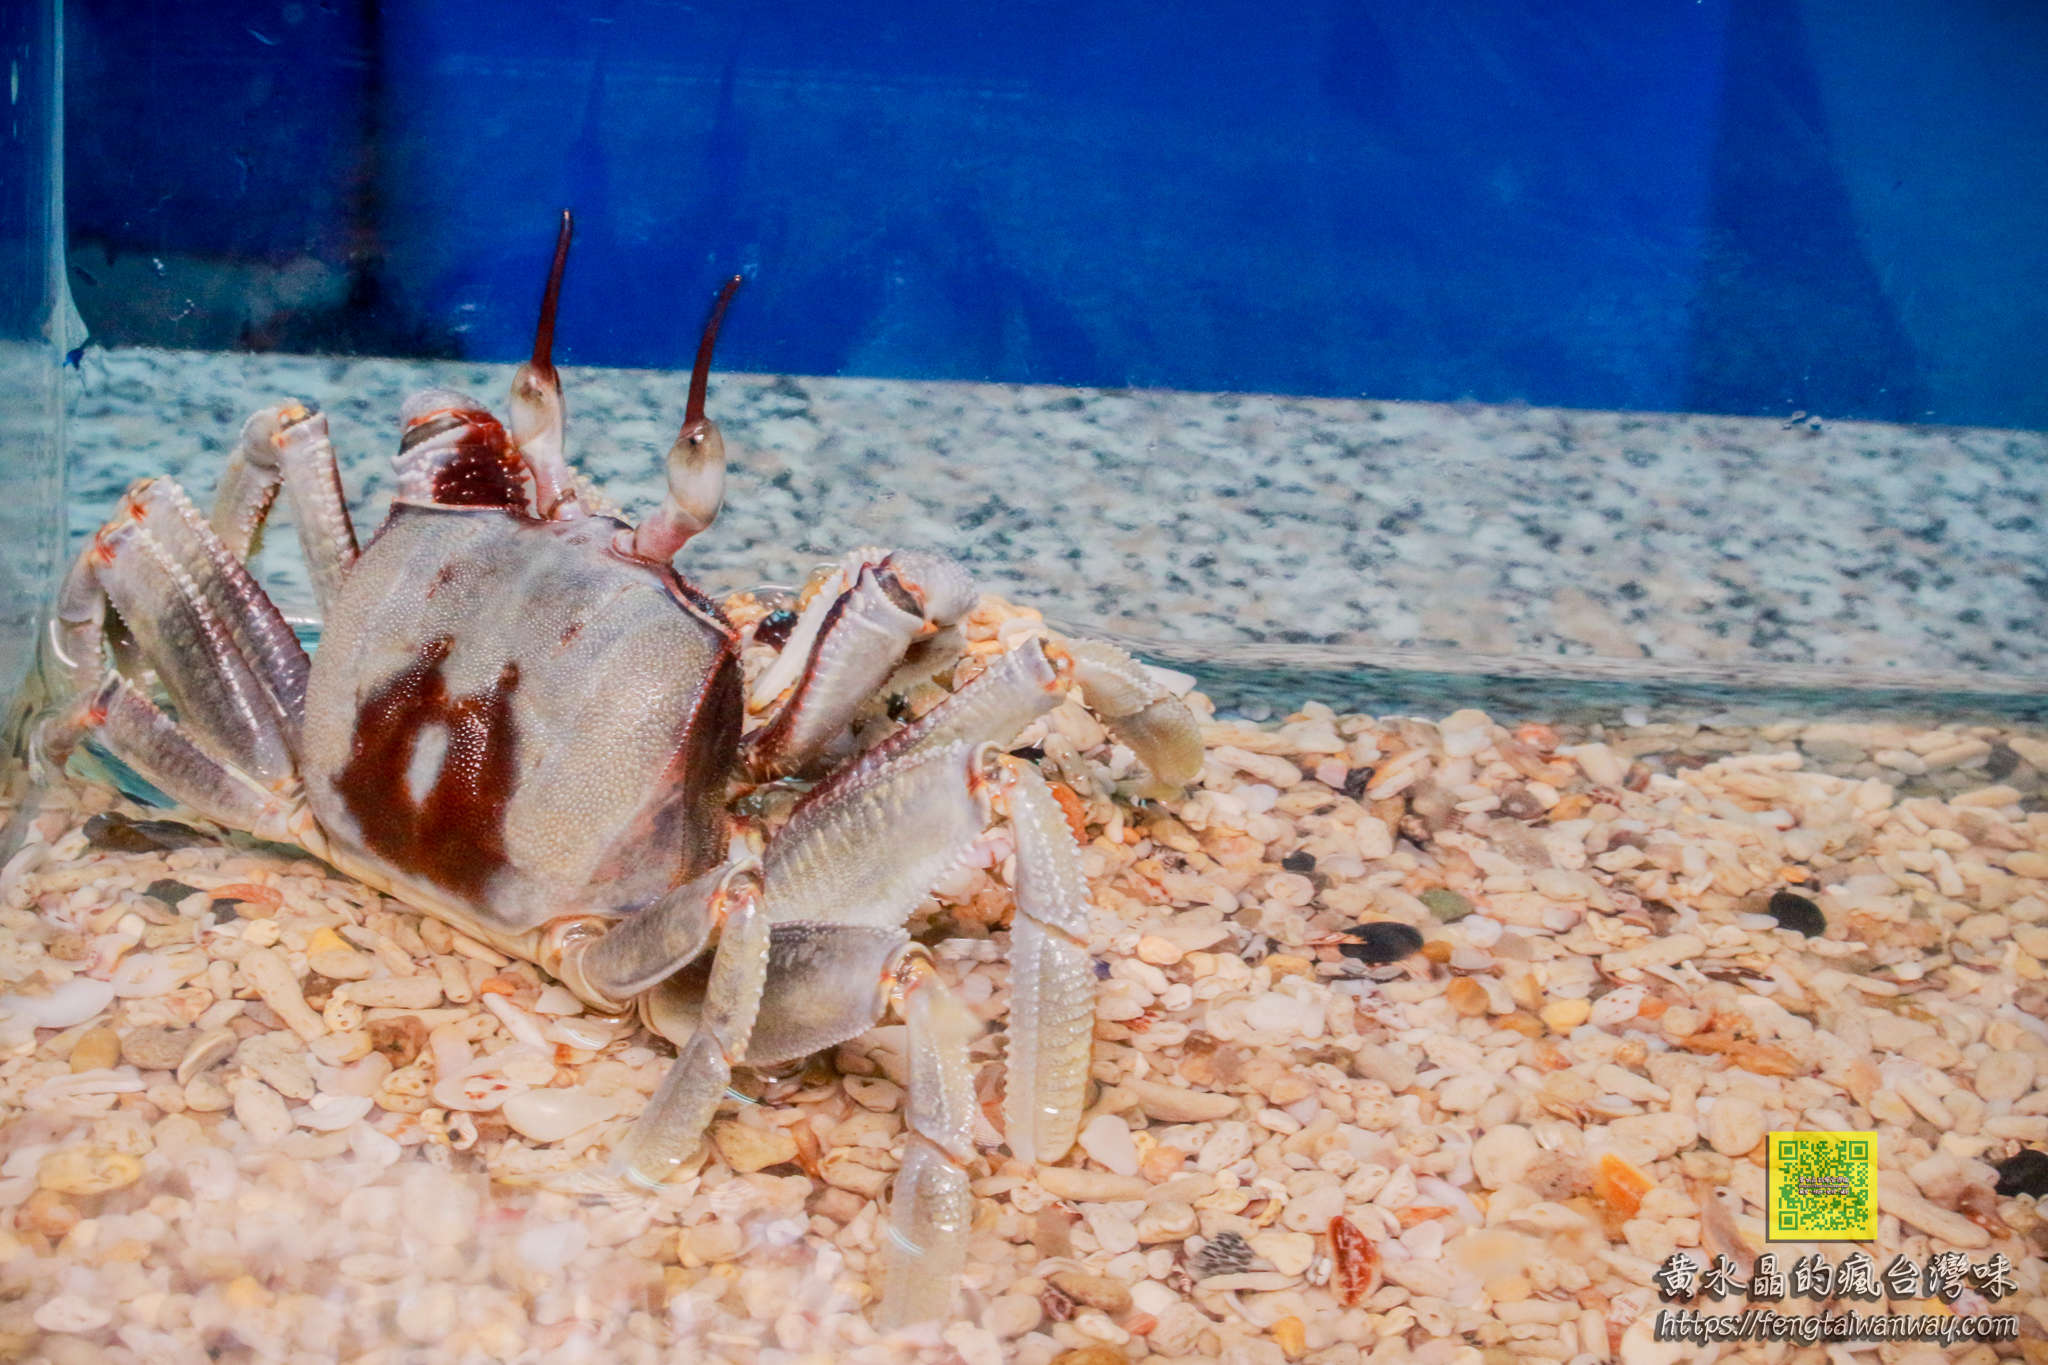 竹灣螃蟹博物館【澎湖景點】|西嶼鄉親子景點；約莫四百種來自世界各地的螃蟹蝦子活體及標本